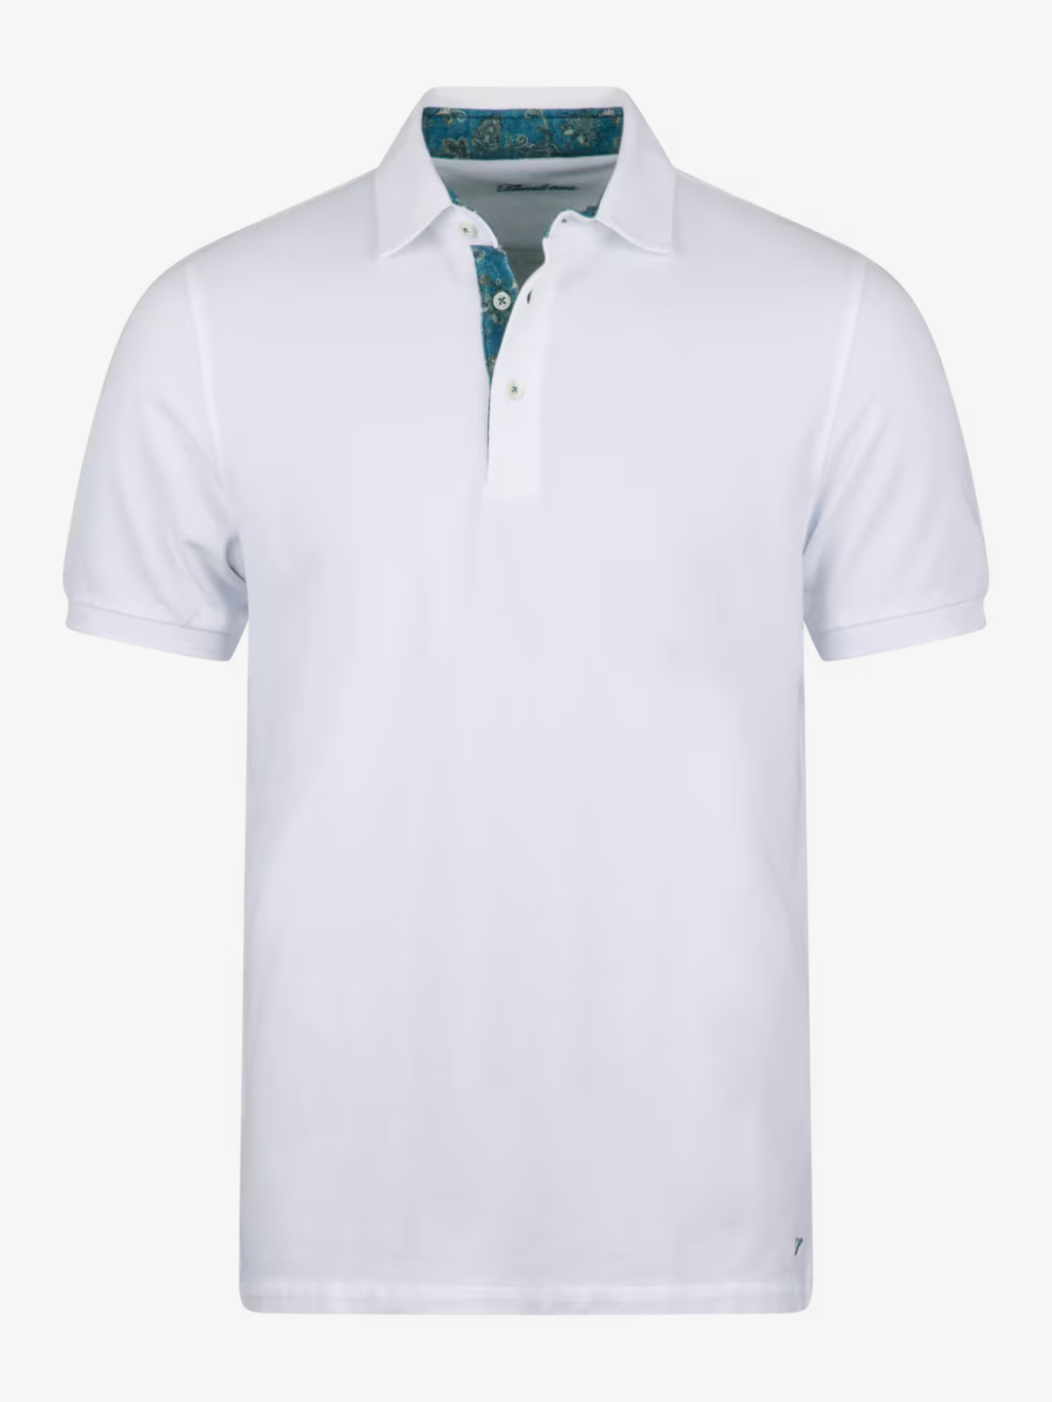 Polo shirt contrast Cotton pique